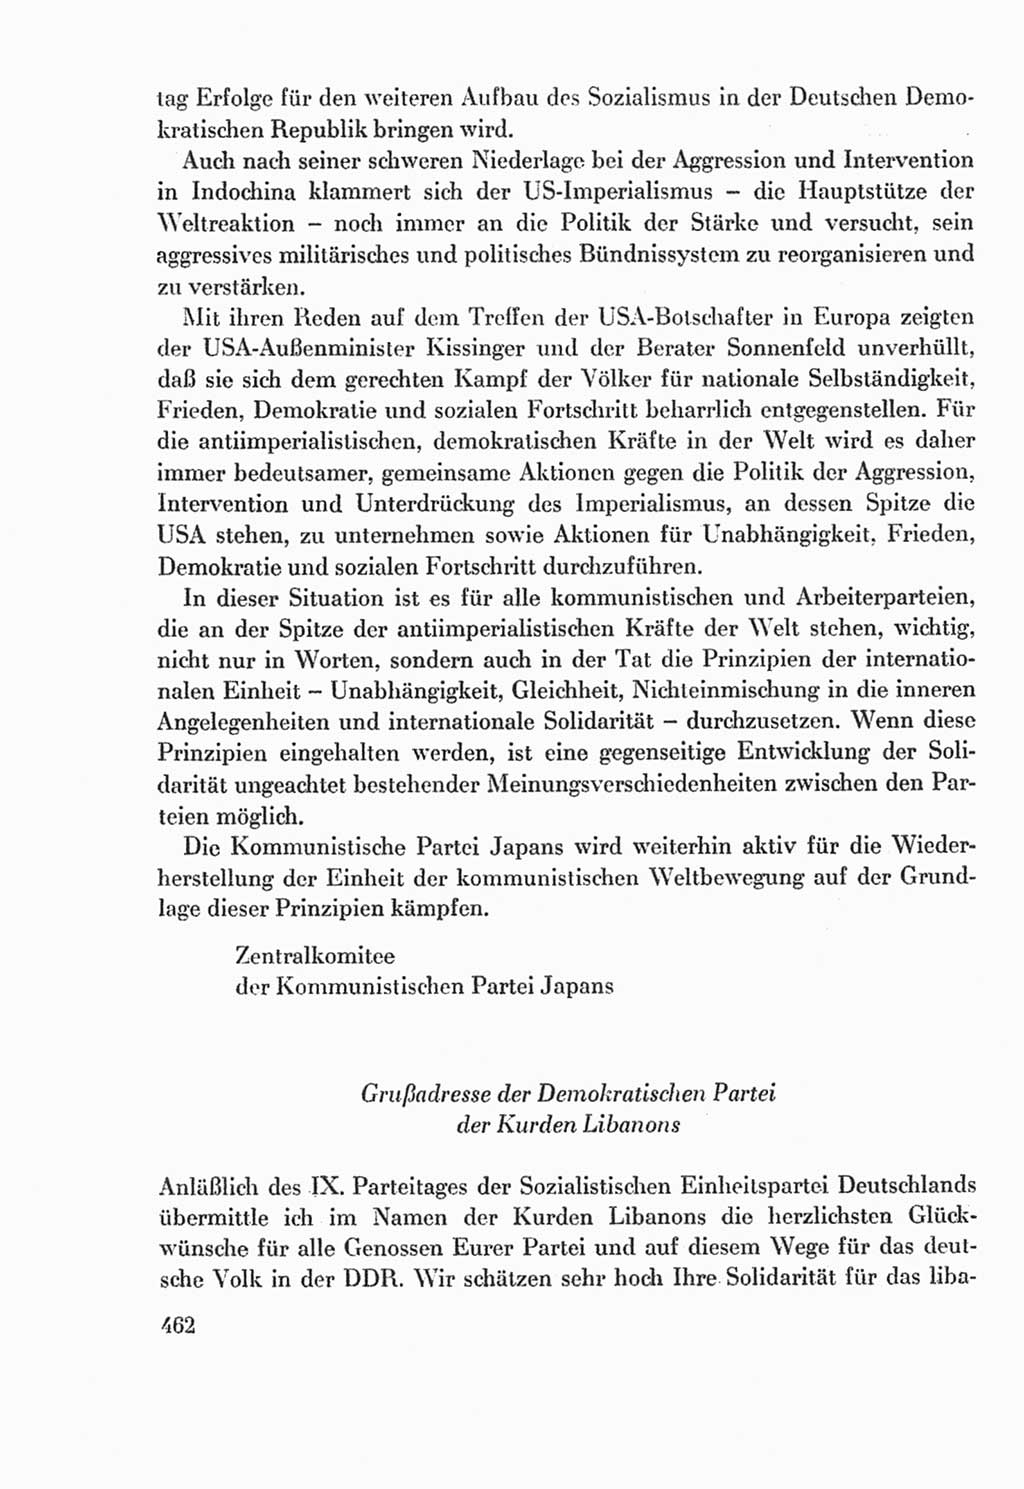 Protokoll der Verhandlungen des Ⅸ. Parteitages der Sozialistischen Einheitspartei Deutschlands (SED) [Deutsche Demokratische Republik (DDR)] 1976, Band 2, Seite 462 (Prot. Verh. Ⅸ. PT SED DDR 1976, Bd. 2, S. 462)